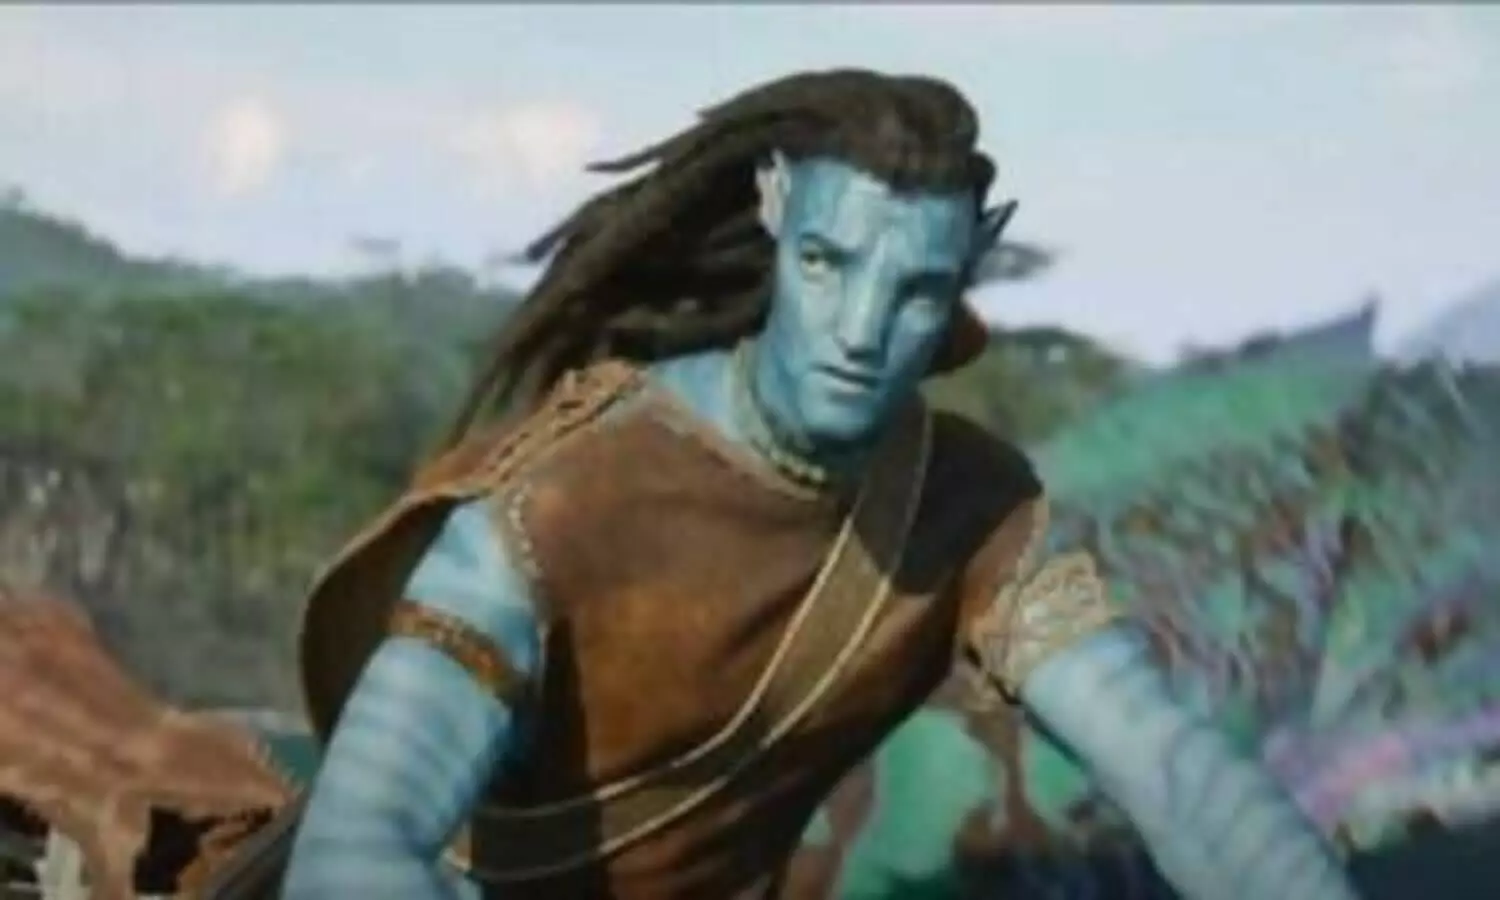 Avatar 2 Movie : जेम्स कैमरून की फिल्म अवतार द वे ऑफ वॉटर भारत में दूसरी बेस्ट हॉलीवुड ओपनर बनी, कमाए 41 करोड़ रुपए